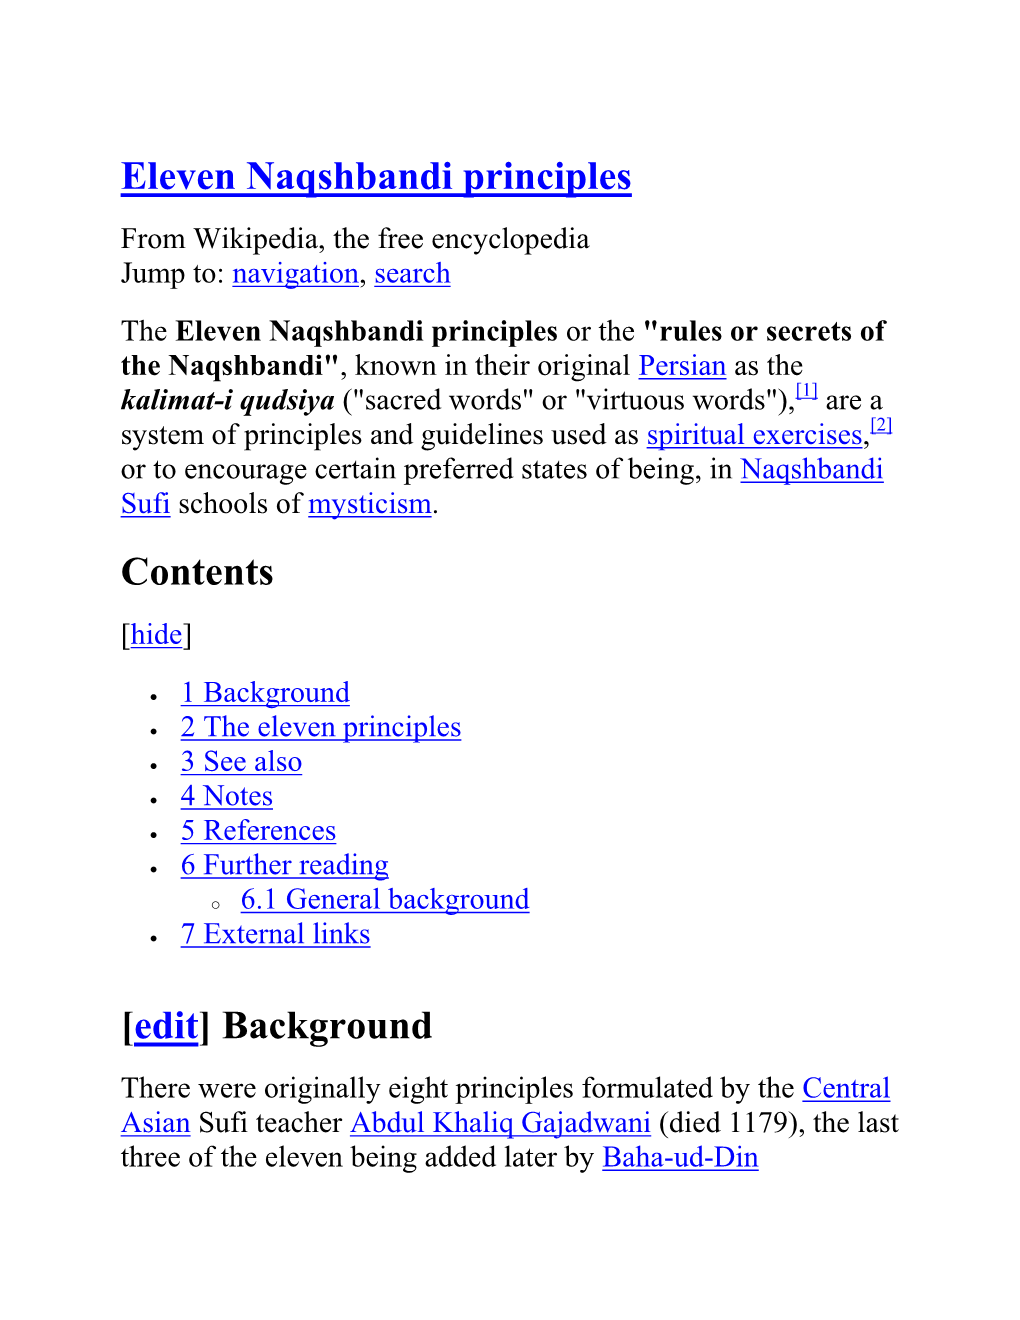 Eleven Naqshbandi Principles